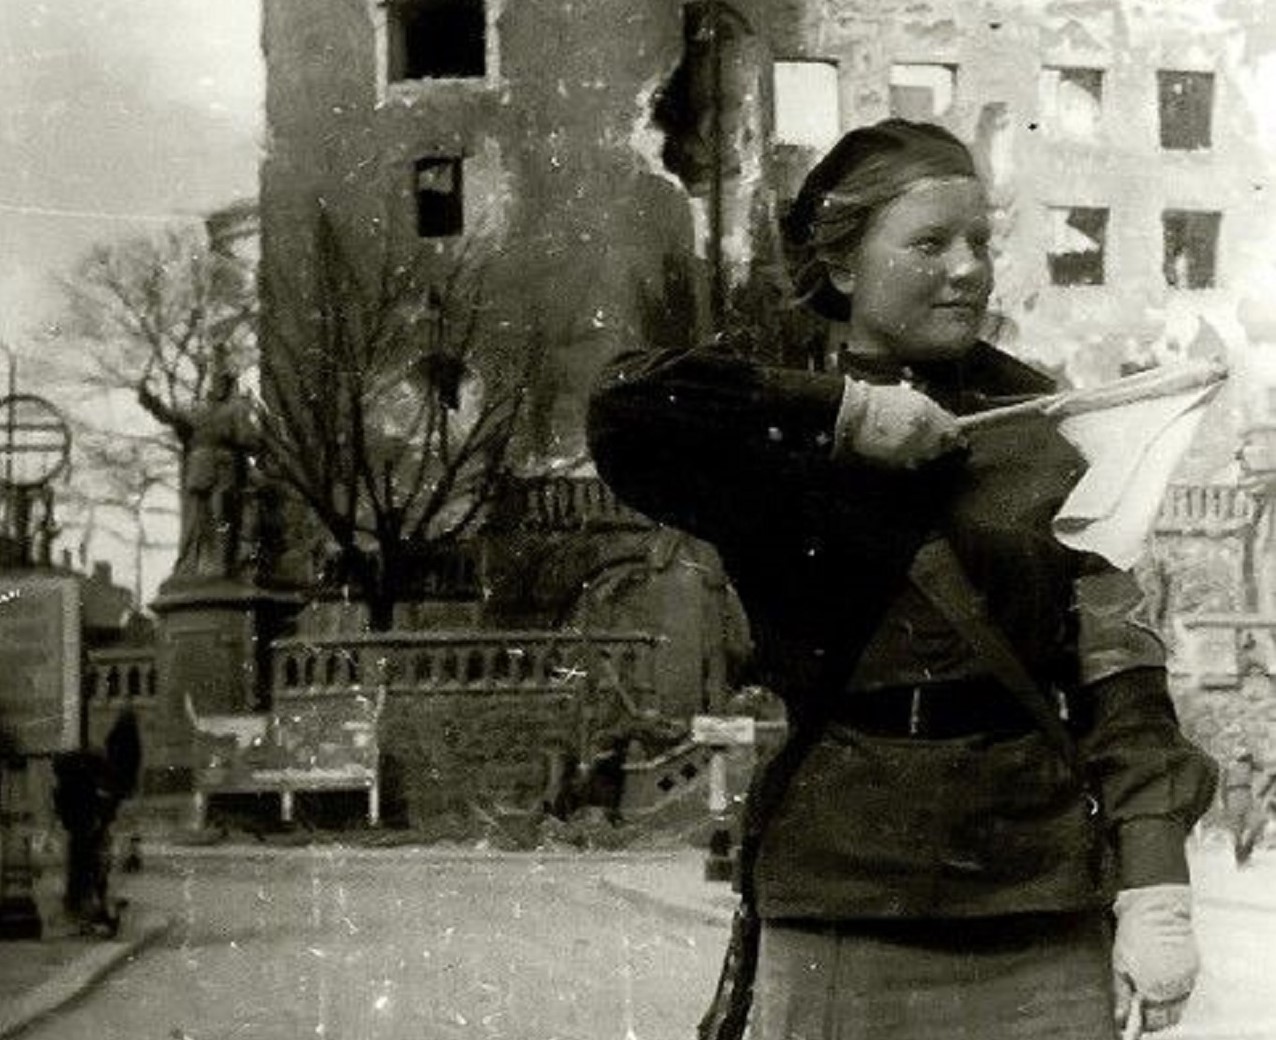 nella foto in bianco e nero si vede, in primo piano sulla destra, una donna, che è un'ausiliaria dell'Armata Rossa, con in mano una specie di bandiera.